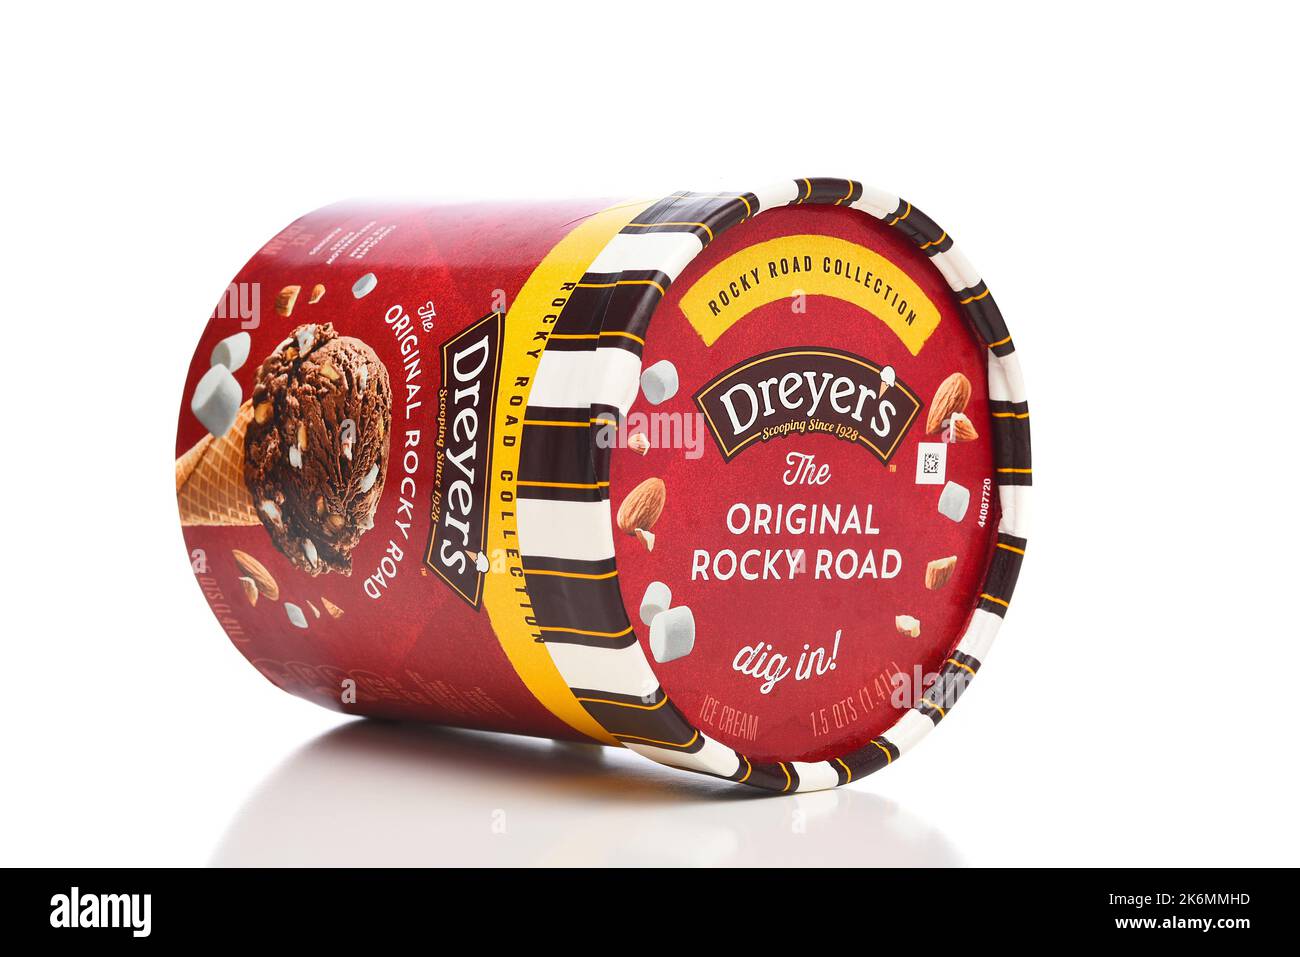 IRVINE, KALIFORNIEN - 14 Okt 2022: Ein Karton mit Dreyers Rocky Road Ice Cream auf seiner Seite. Stockfoto